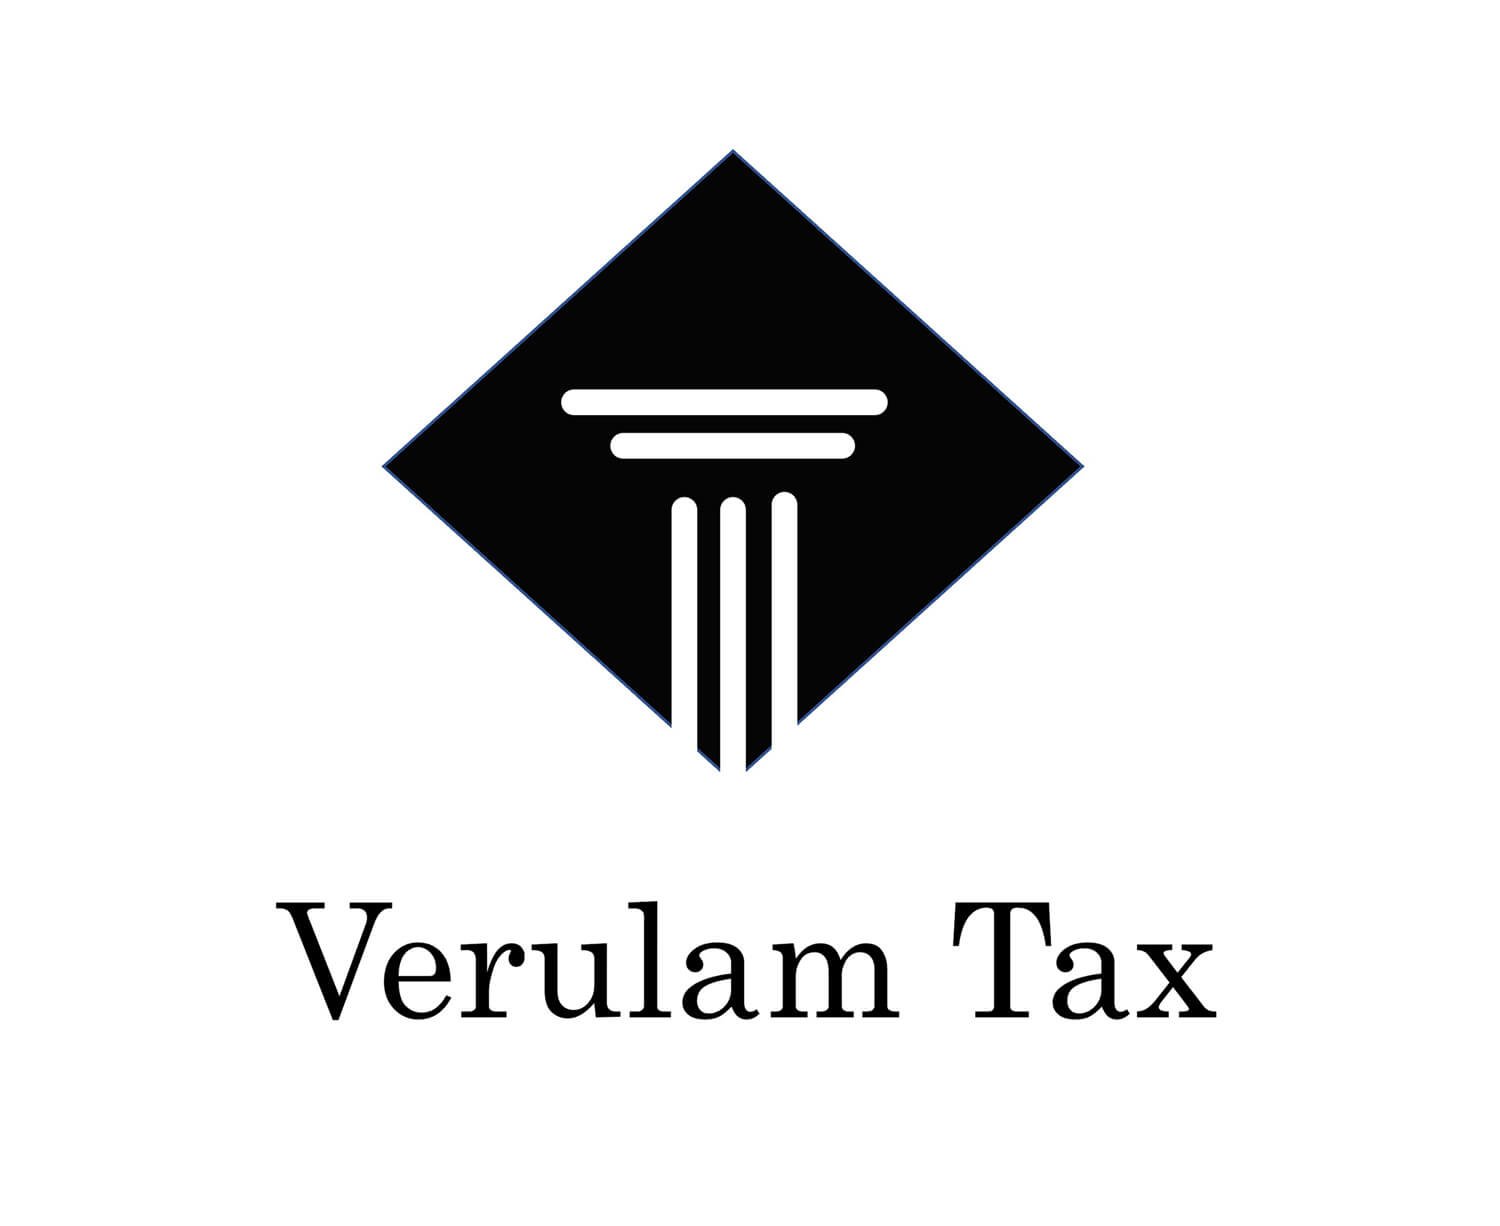 verulam tax St Albans harpenden hertfordshire finance business